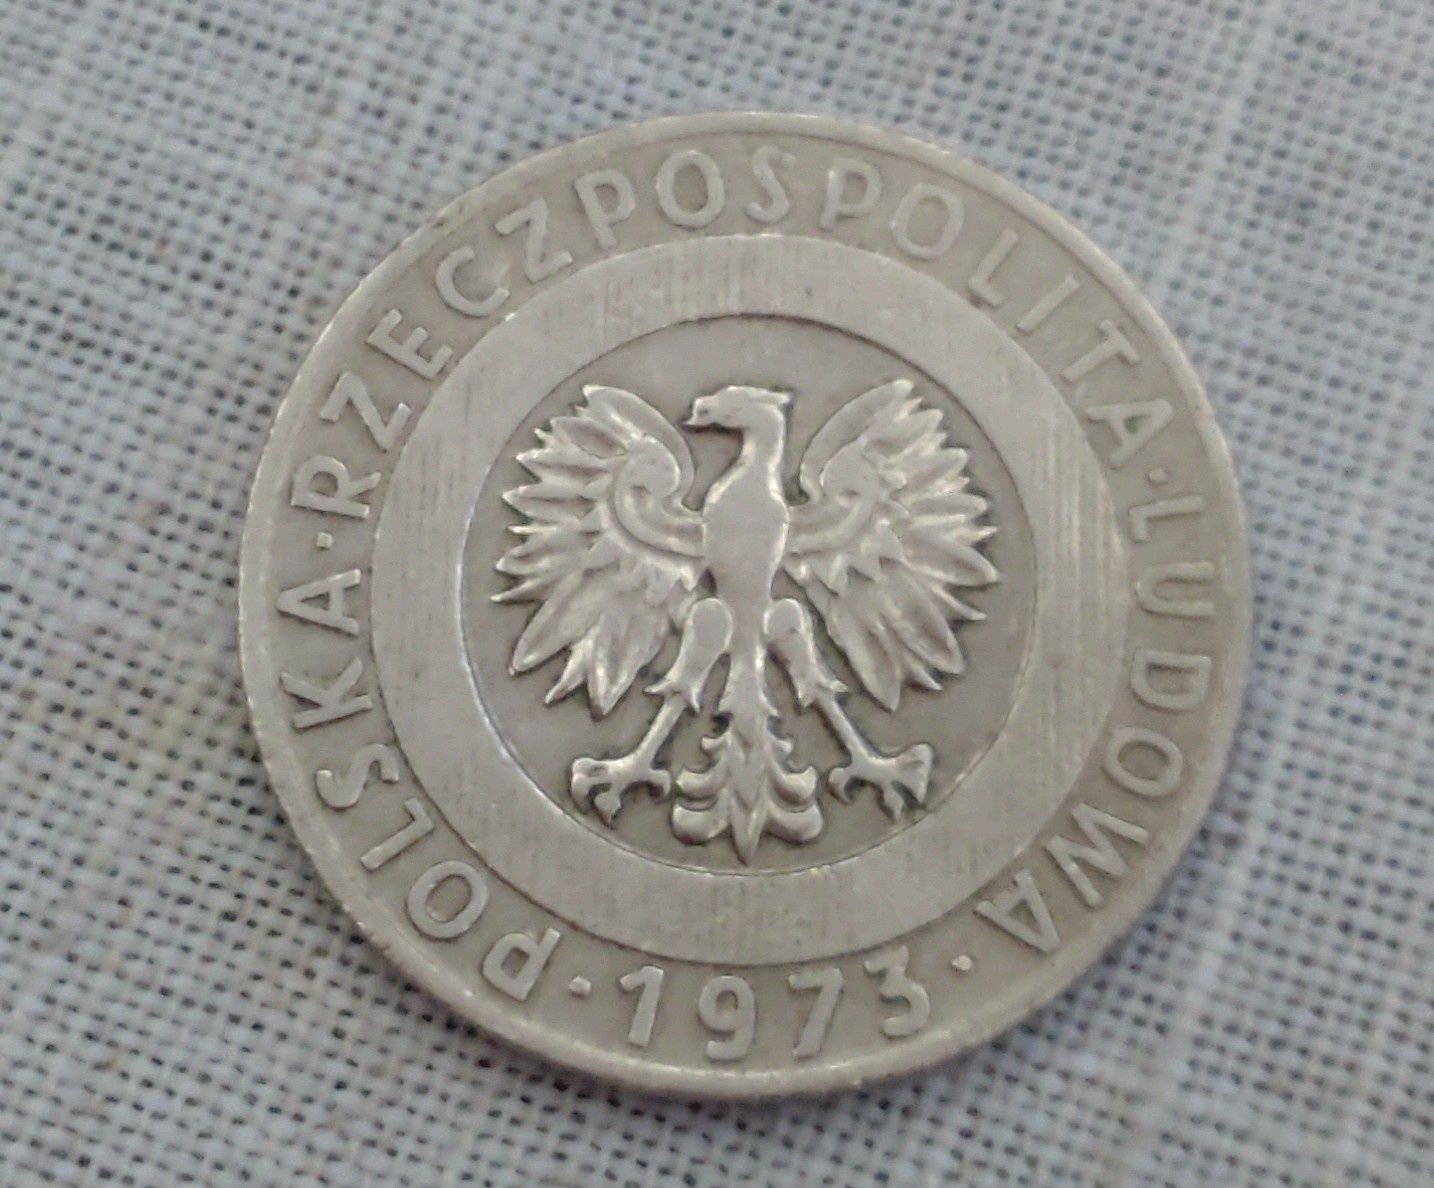 Moneta kolekcjonerska 20 zł. z 1973 r. bez znaku mennicy .